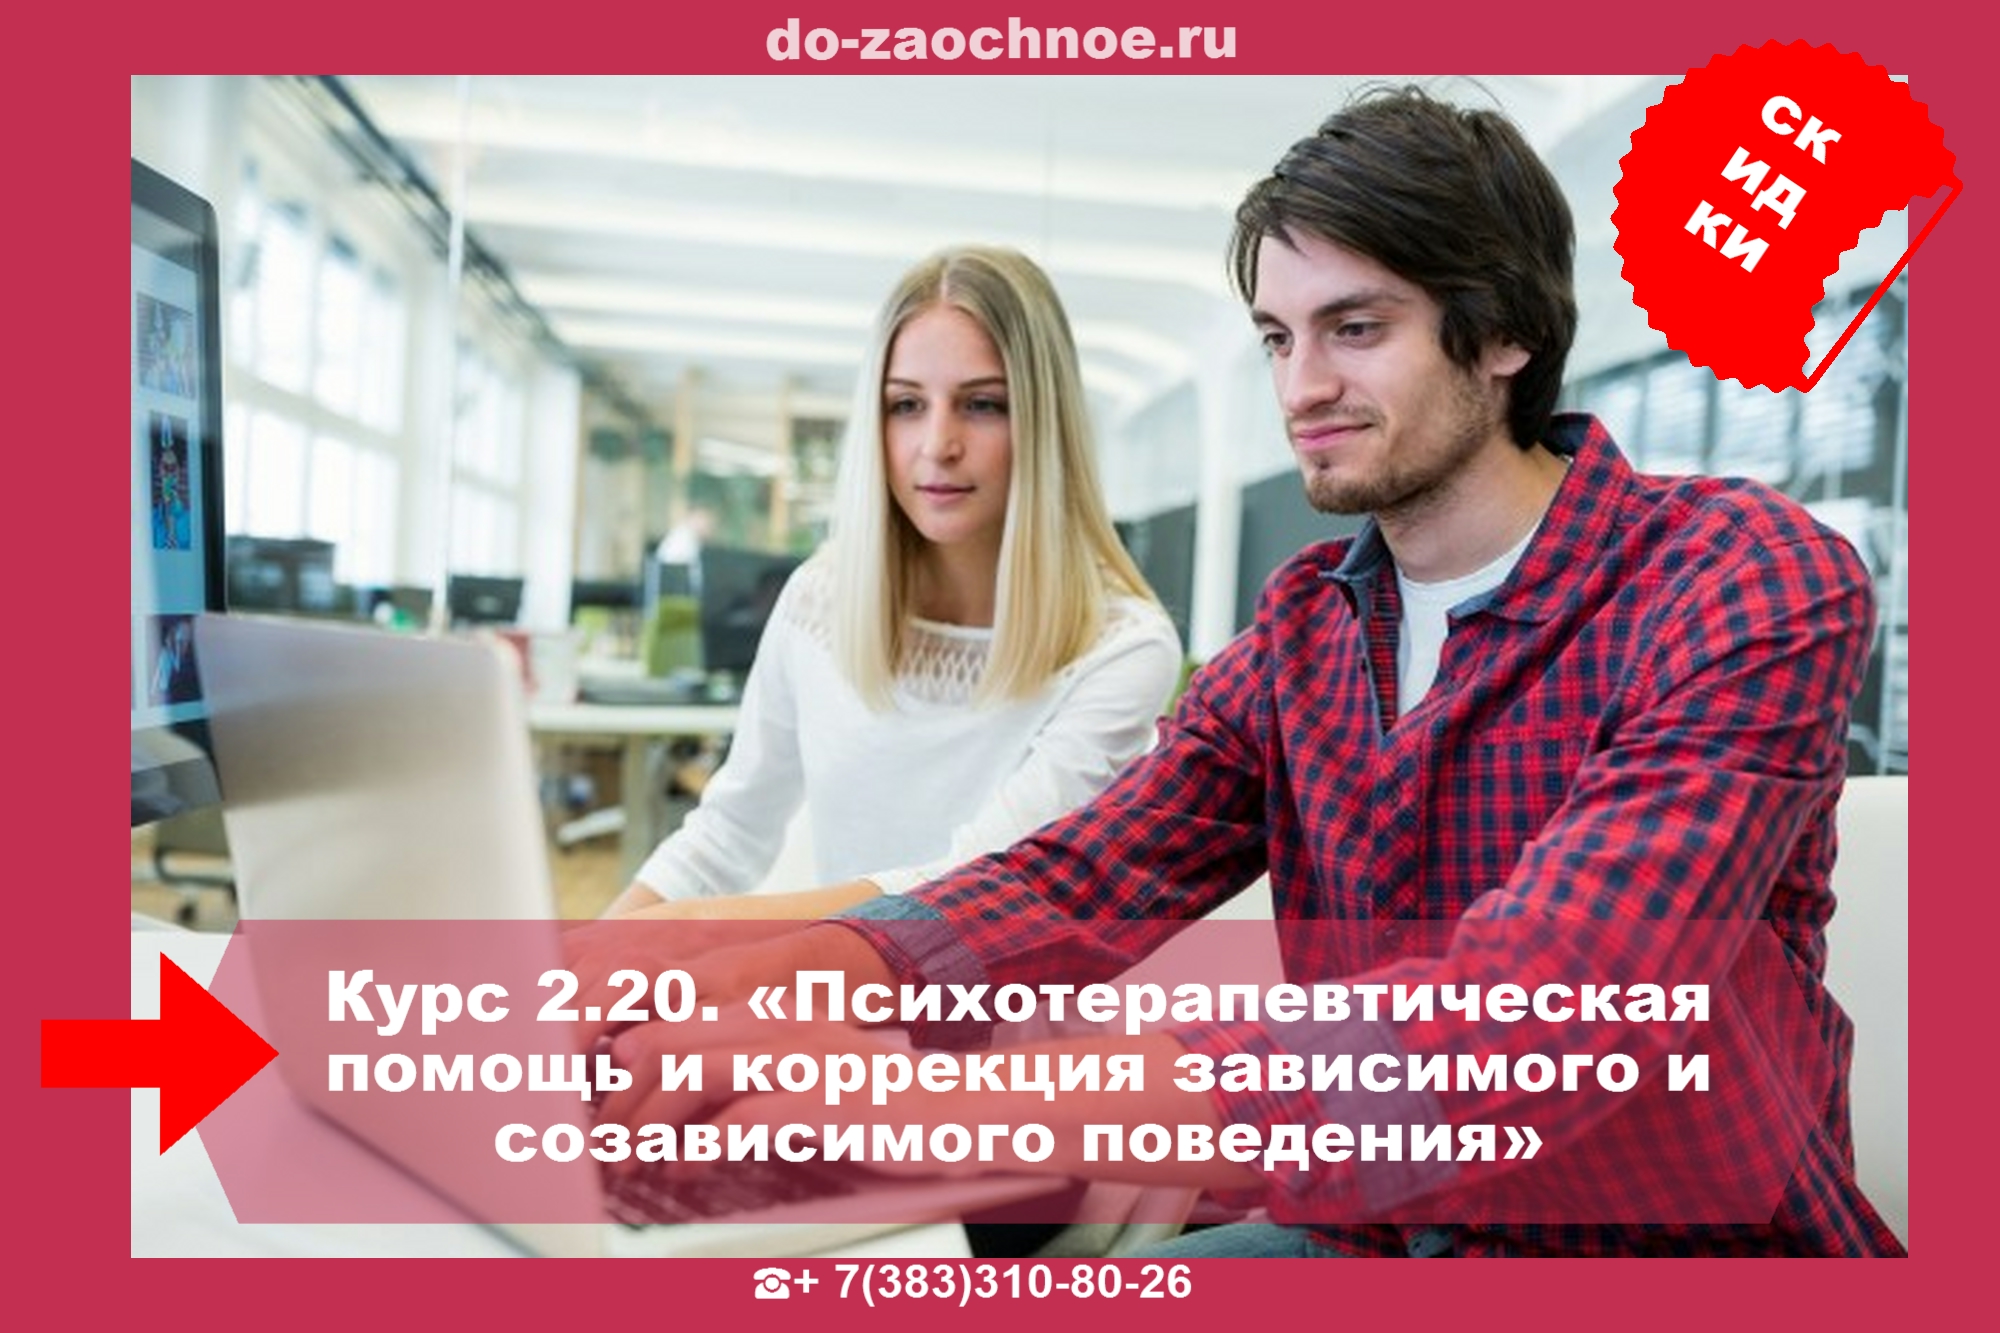 ИДПК дистанционные курсы коррекция зависимого и созависимого поведения на do-zaochnoe.ru ТУТ!